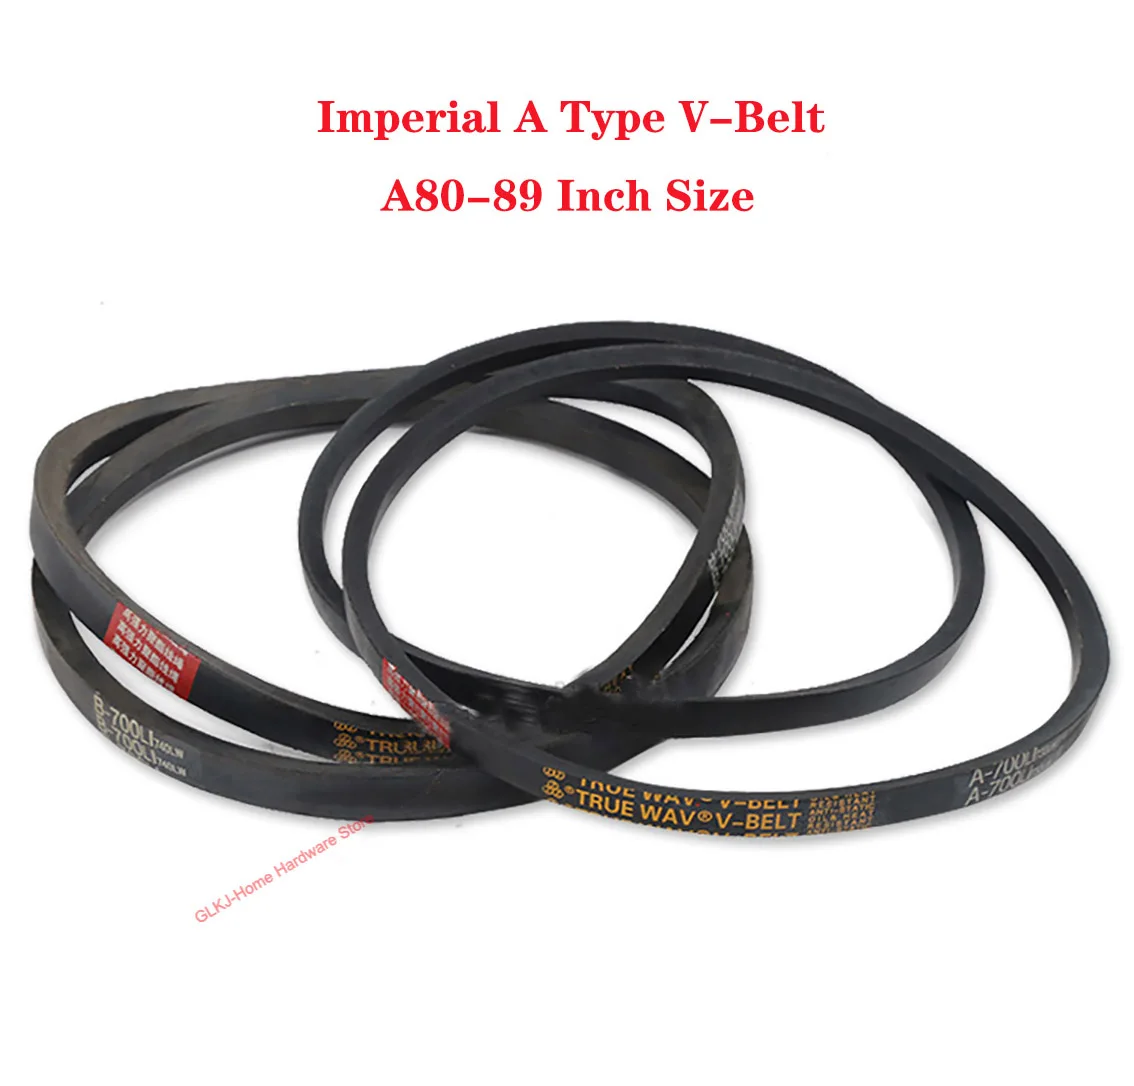 

1Pcs Imperial Triangle Belt A Type A80-89 Inch Size Black Rubber V-Belt Industrial Agricultural Mechanical Transmission Belt